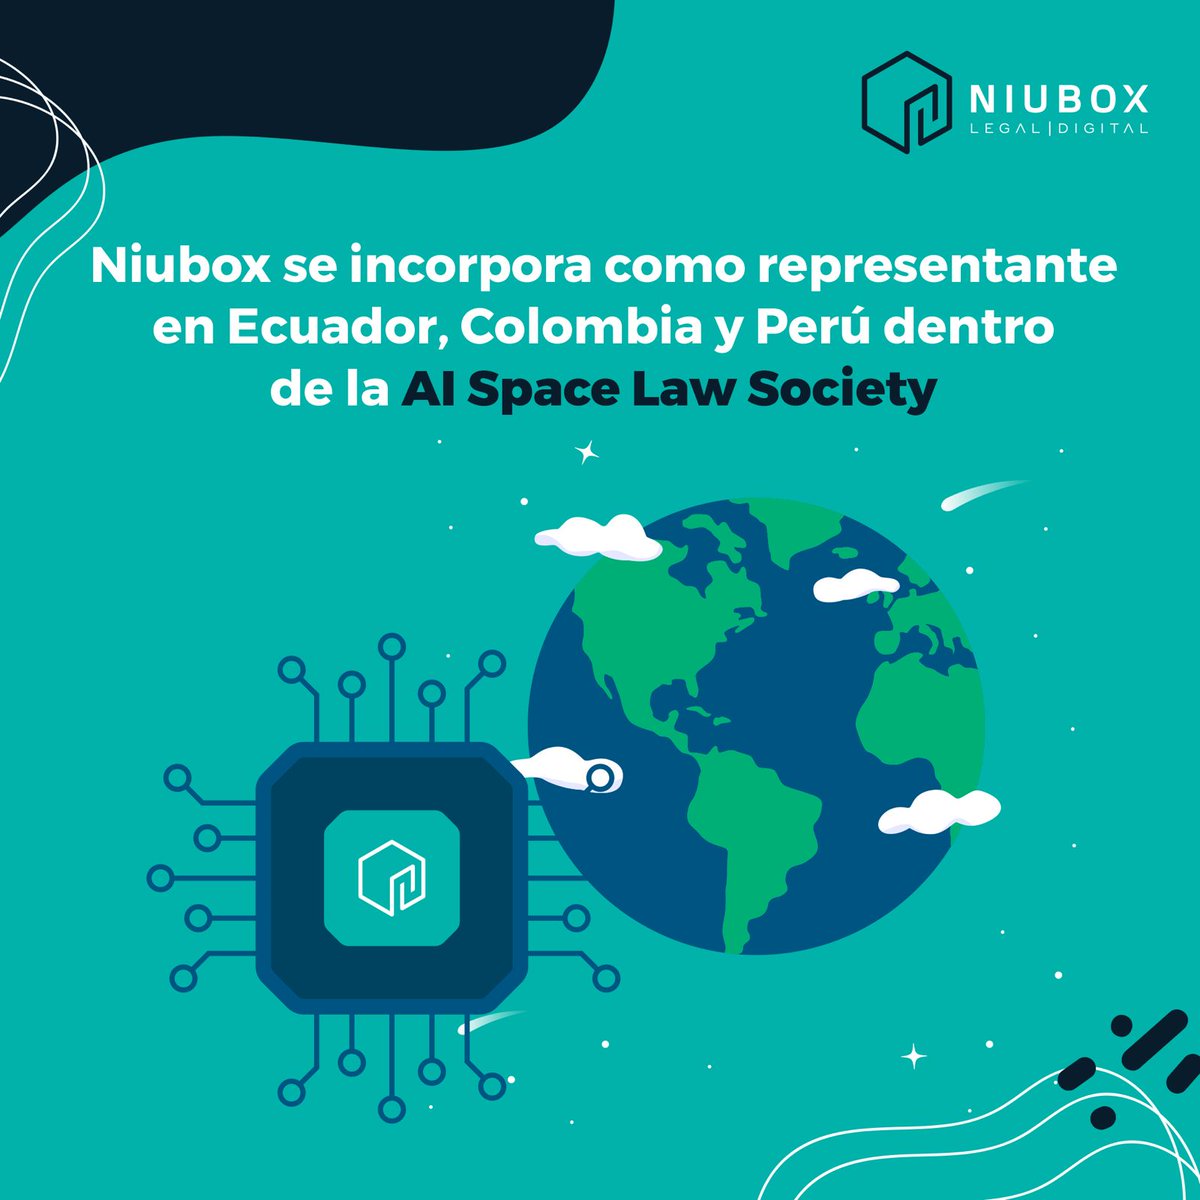 #Niubox

🌟 Nos emociona anunciar que Niubox se ha unido a la AI ∞ SpaceLaw Society como representante oficial en Ecuador, Colombia y Perú. 🚀🤖